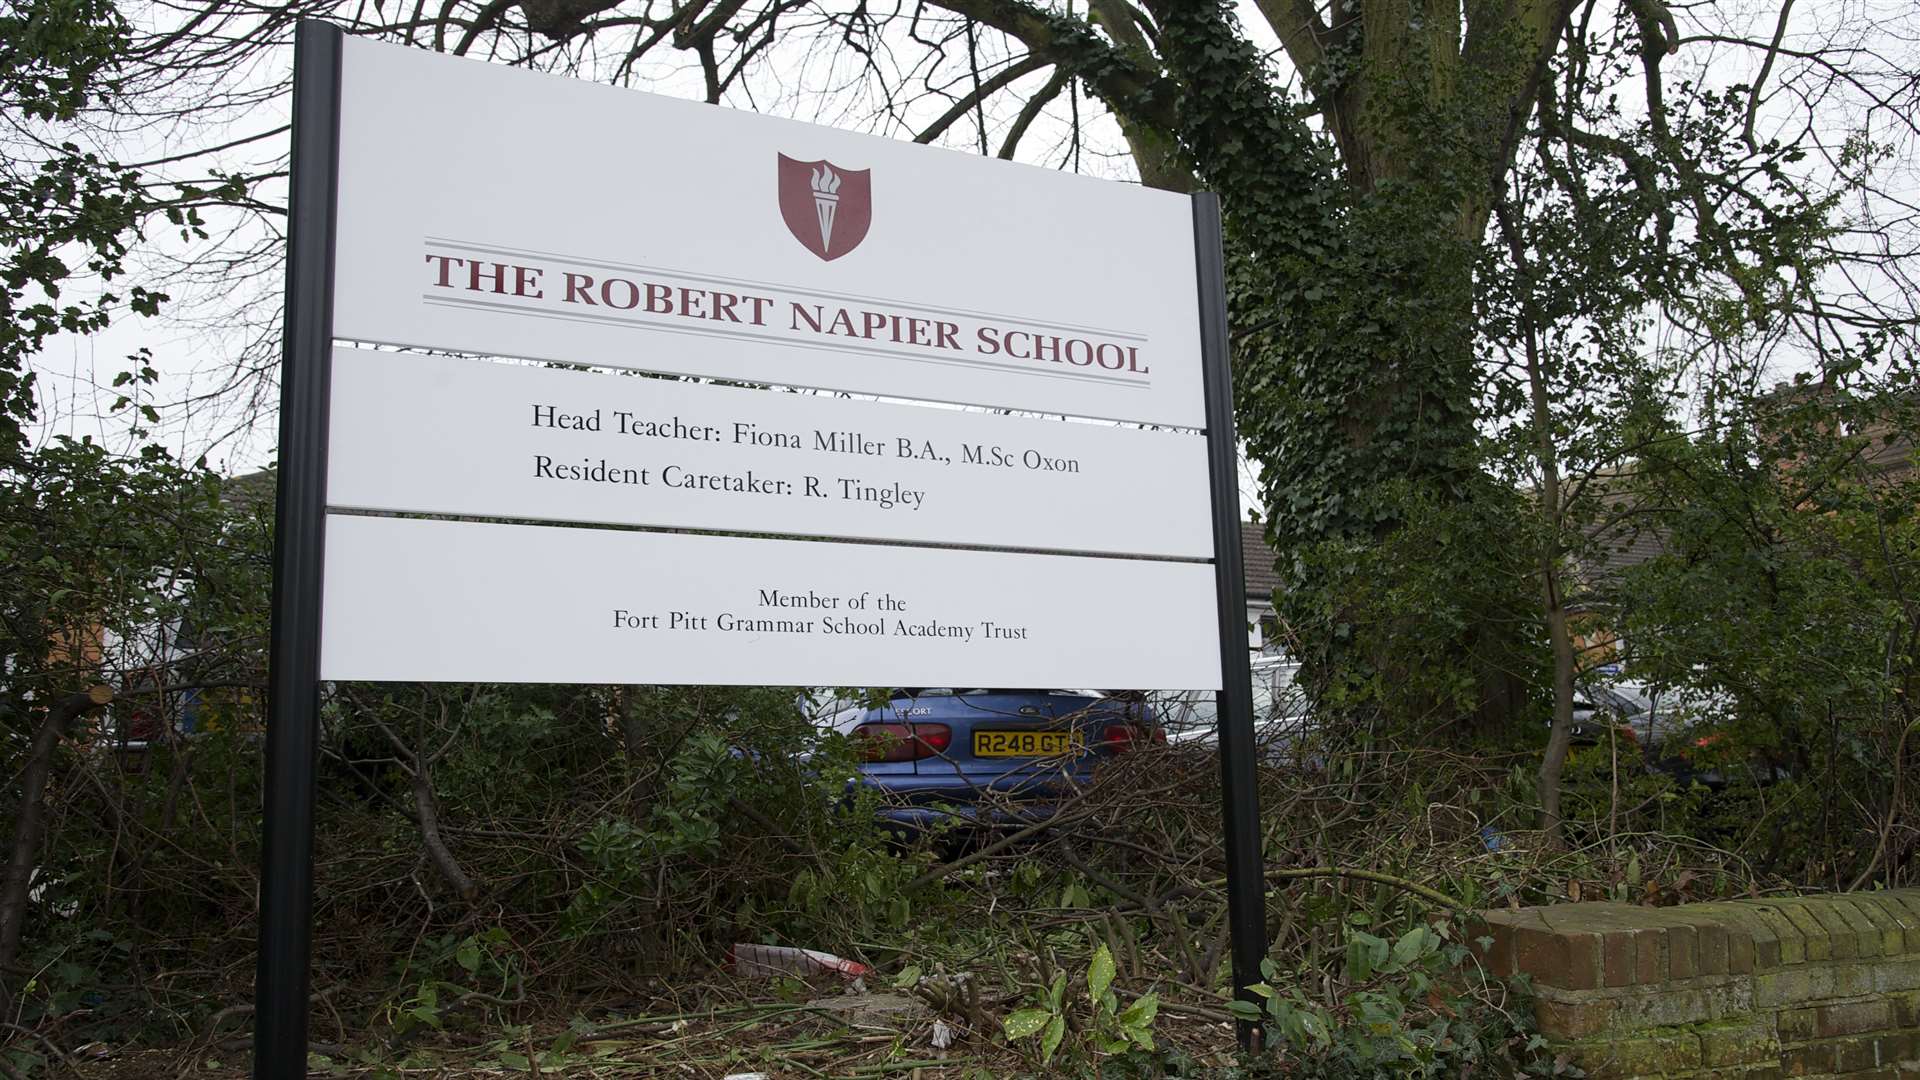 Robert Napier School, Third Avenue, Gillingham